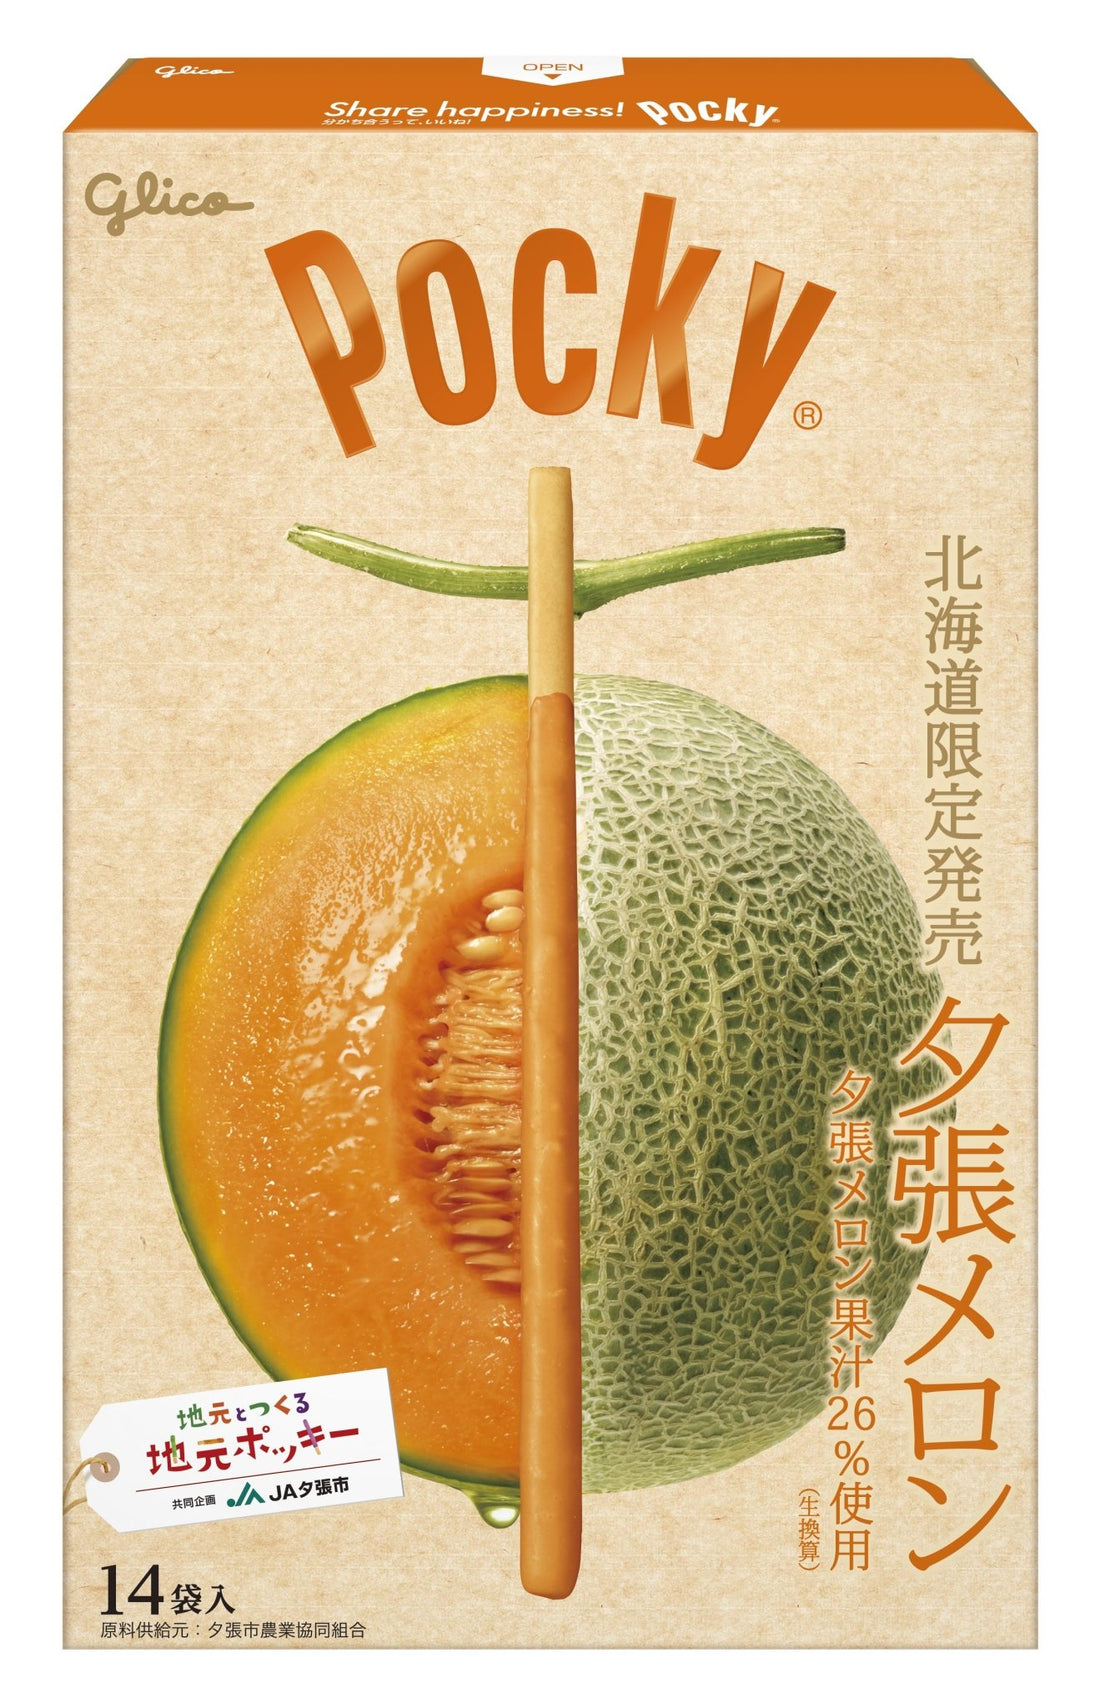 Glico Pocky Yubari melon flavor 117g - NihonMura